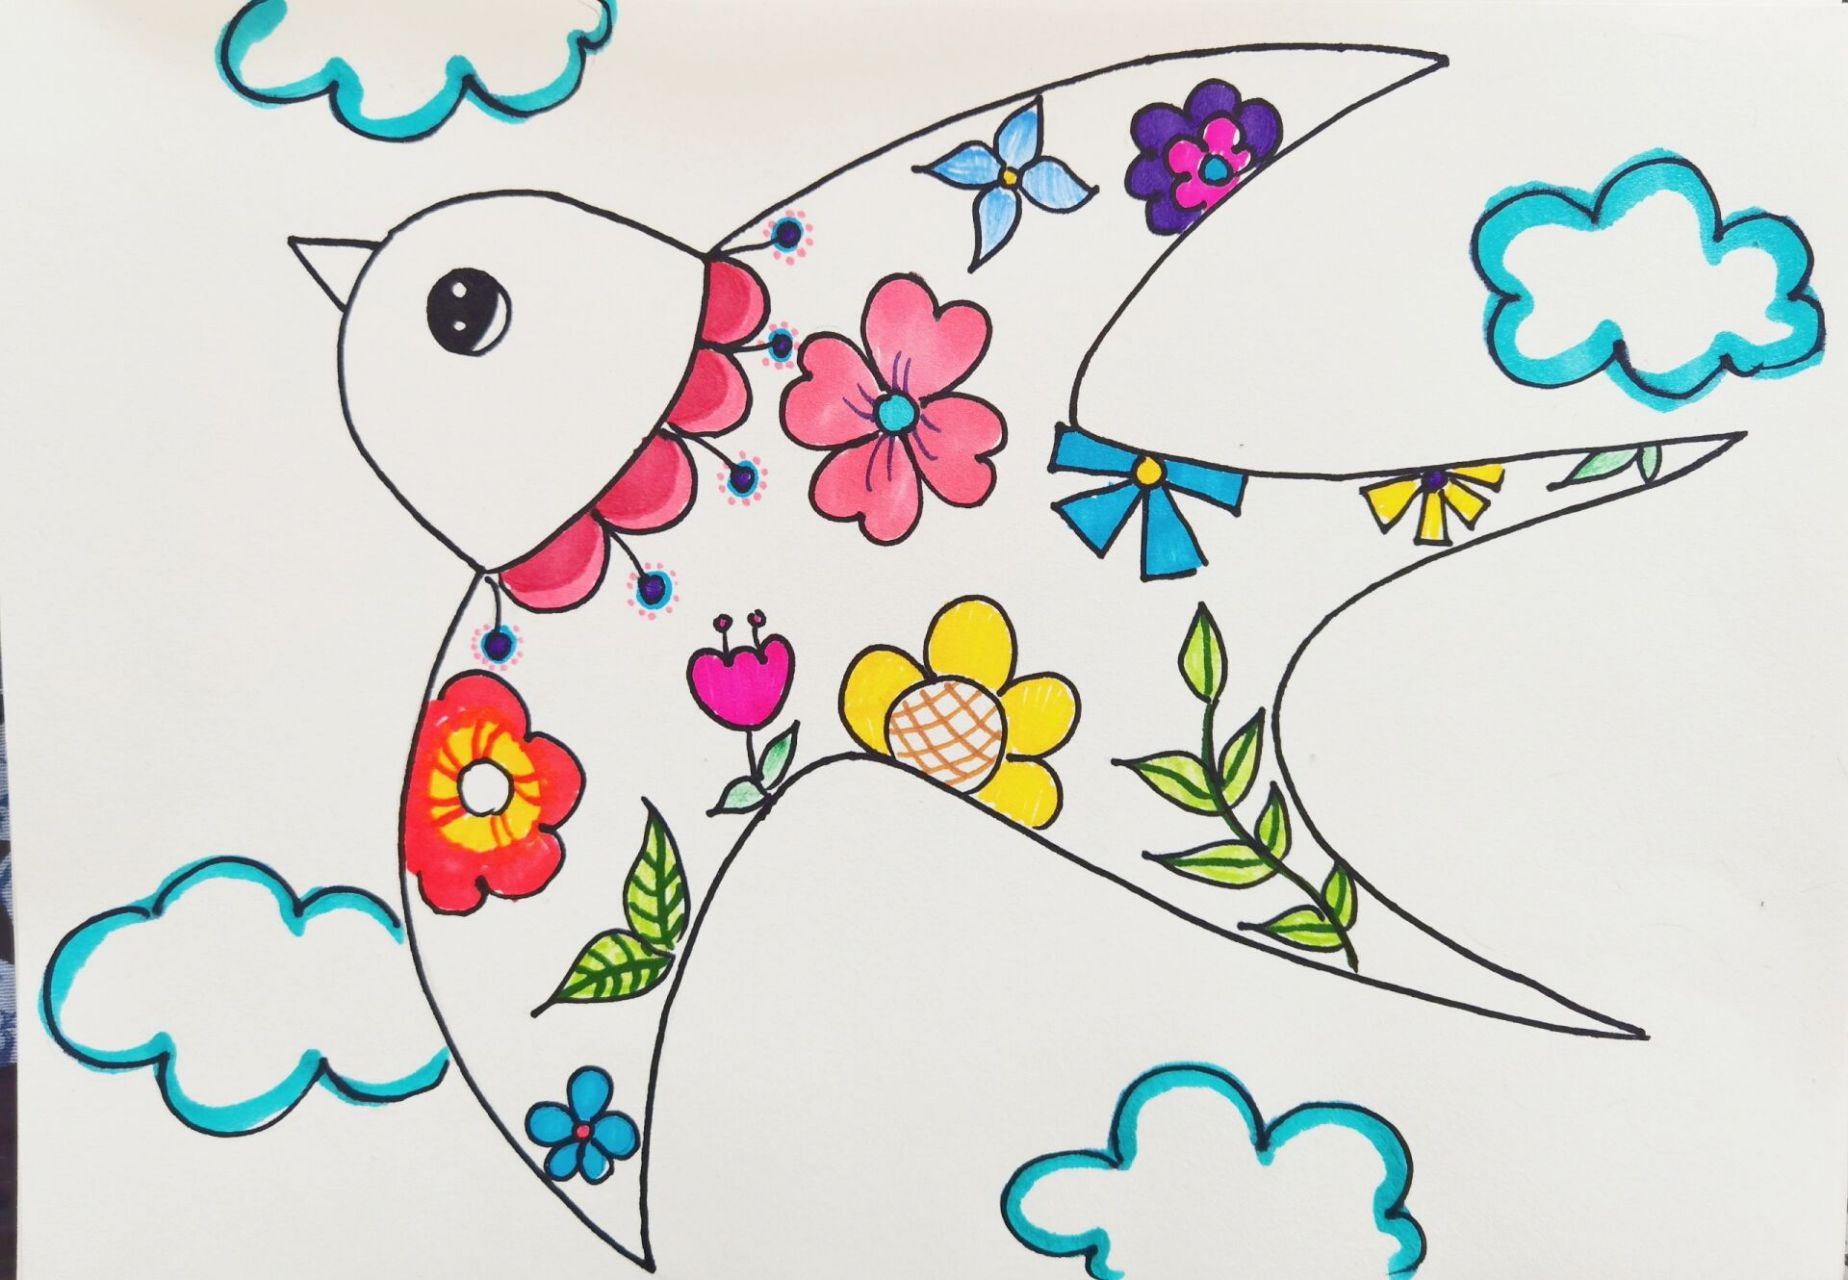 小燕子穿花衣绘画 燕子的花衣裳儿童画,下一篇更新更多同系列作品